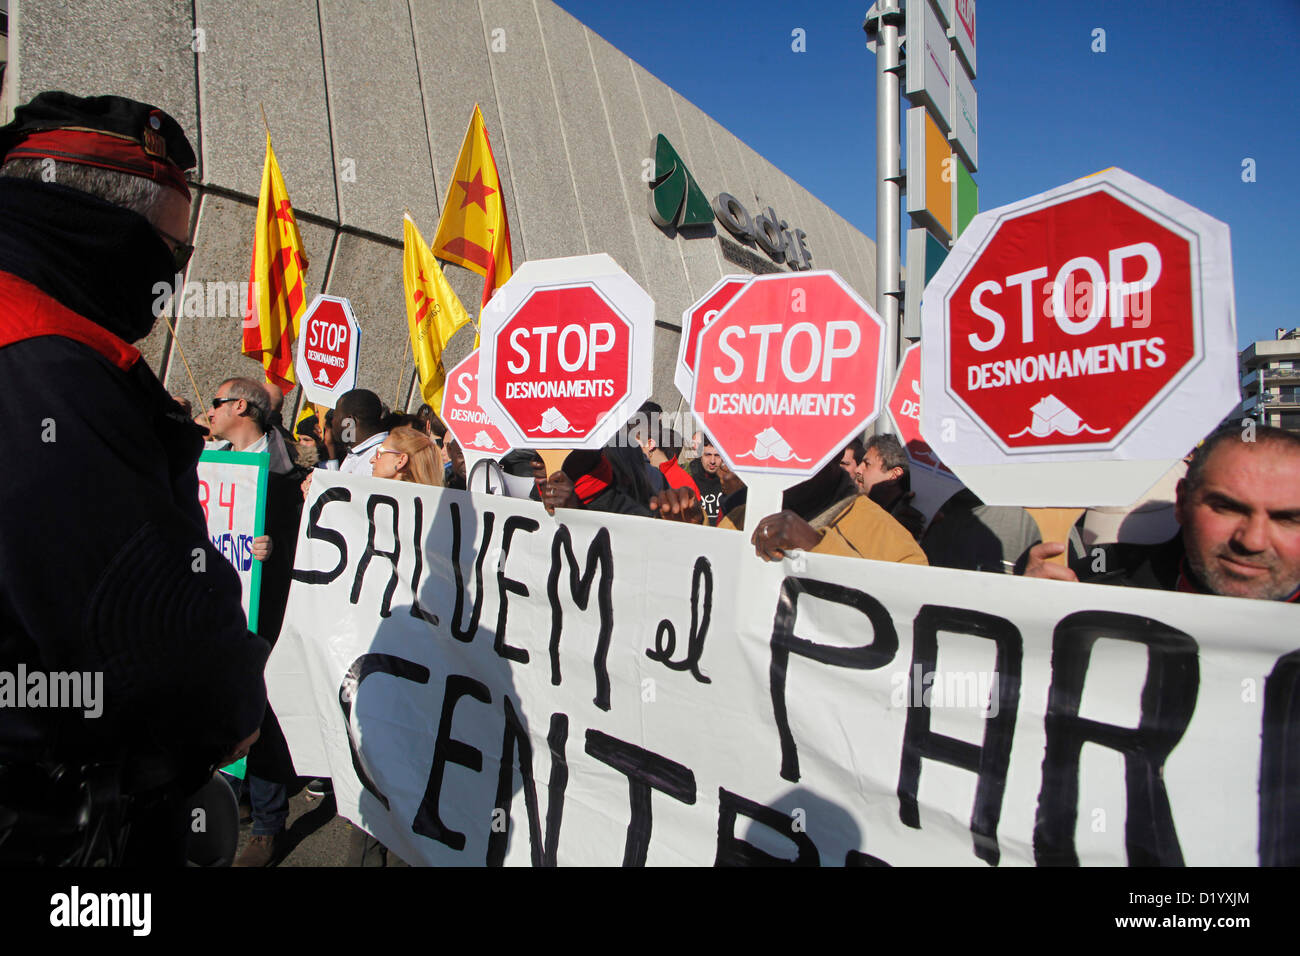 La inauguración del AVE a Girona reúne a Rajoy y Artur Mas. Mientras tanto se manifiestan gente en contra de la política hipotecaria de gobierno delante de la estación de tren de Girona Stock Photo